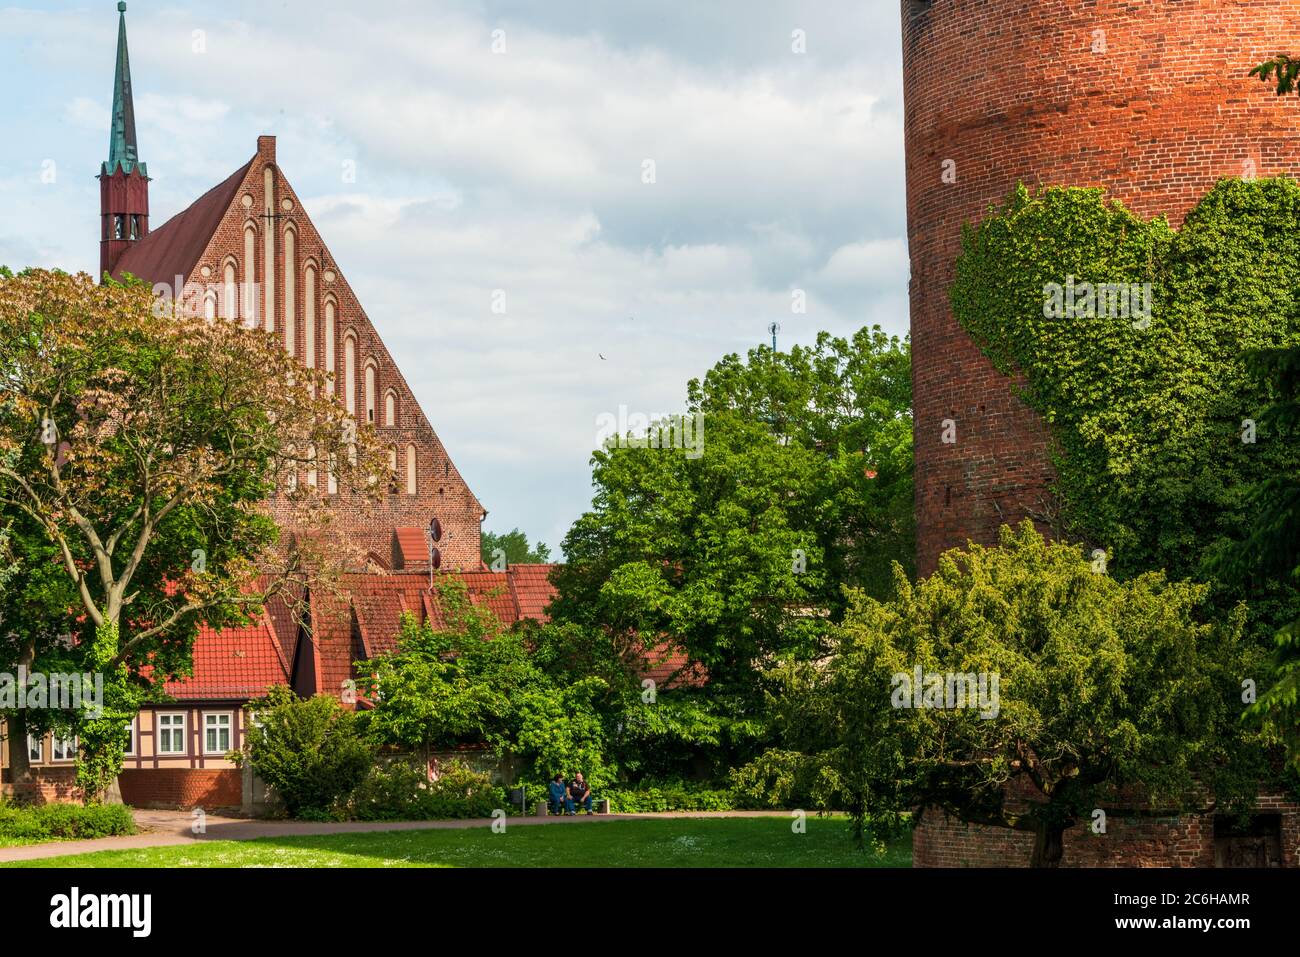 Salzwedel eine Kleinstadt in Sachsen-Anhalt, bekannt durch ihren Baumkuchen und die Backstein Architektur Stock Photo